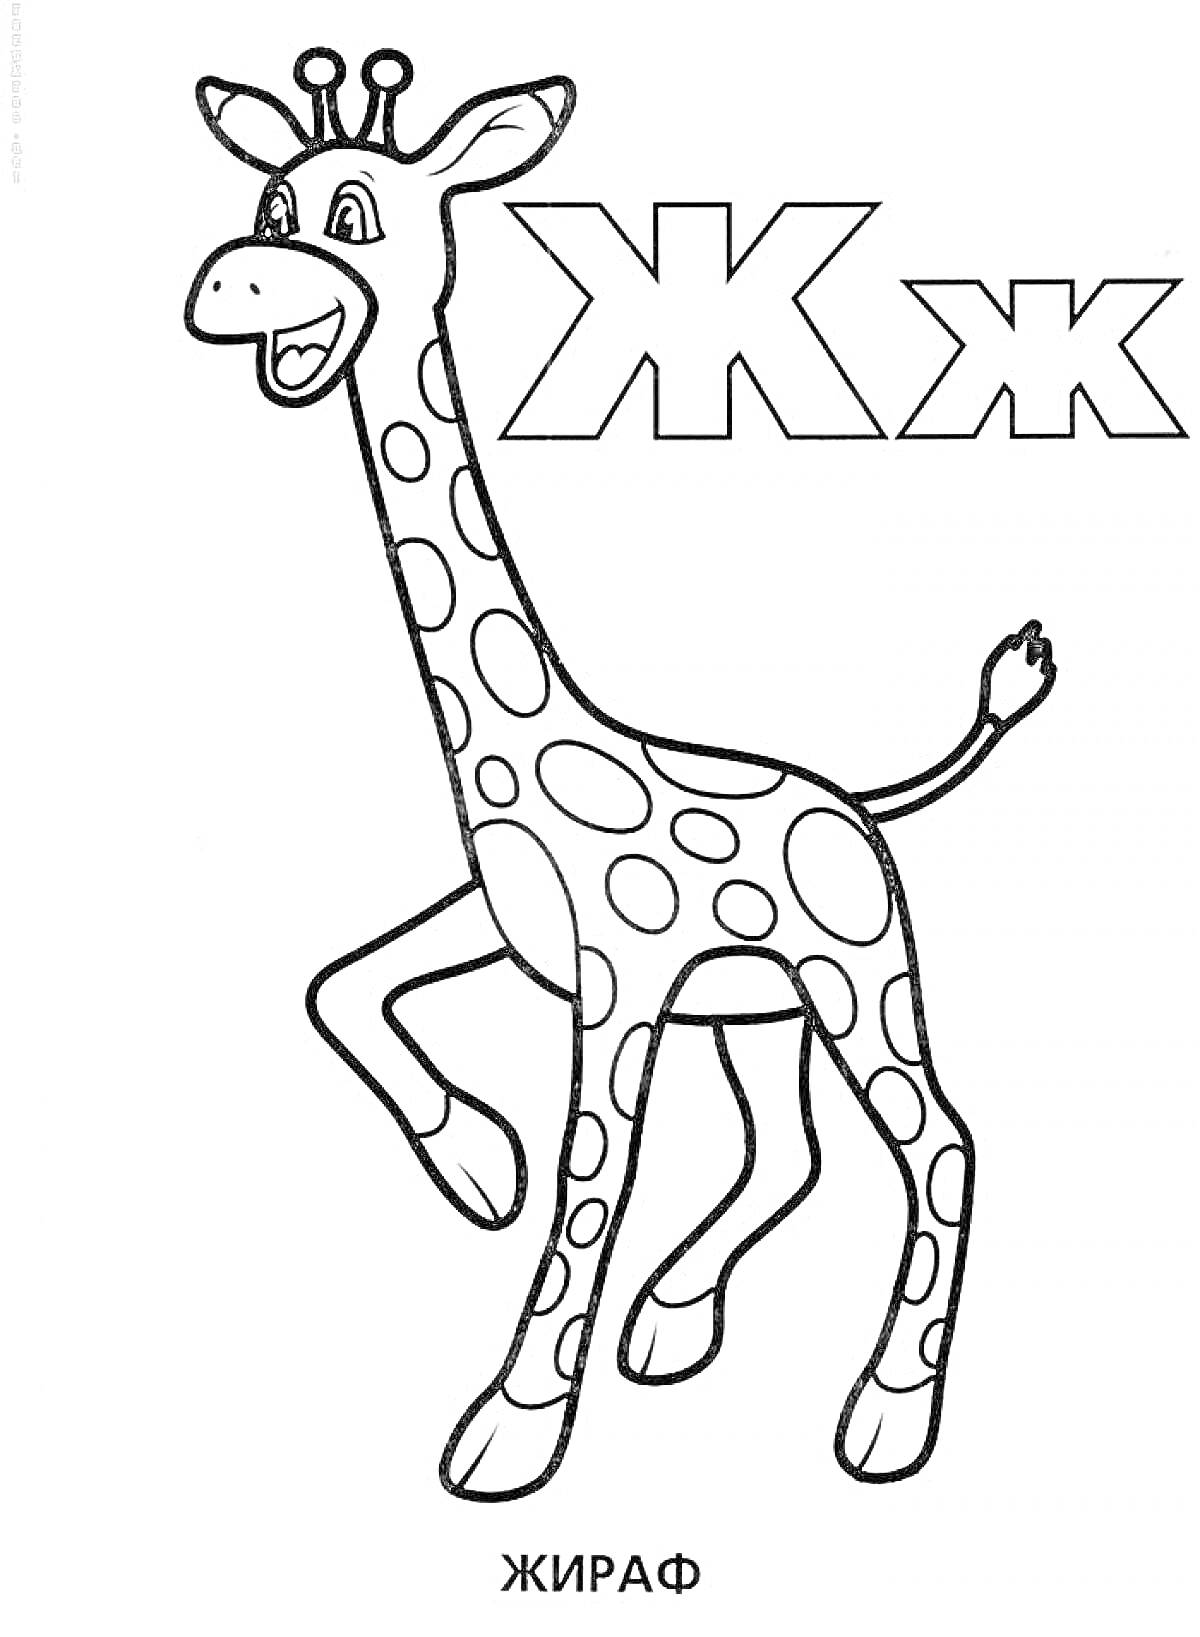 Жираф с буквами Ж и ж